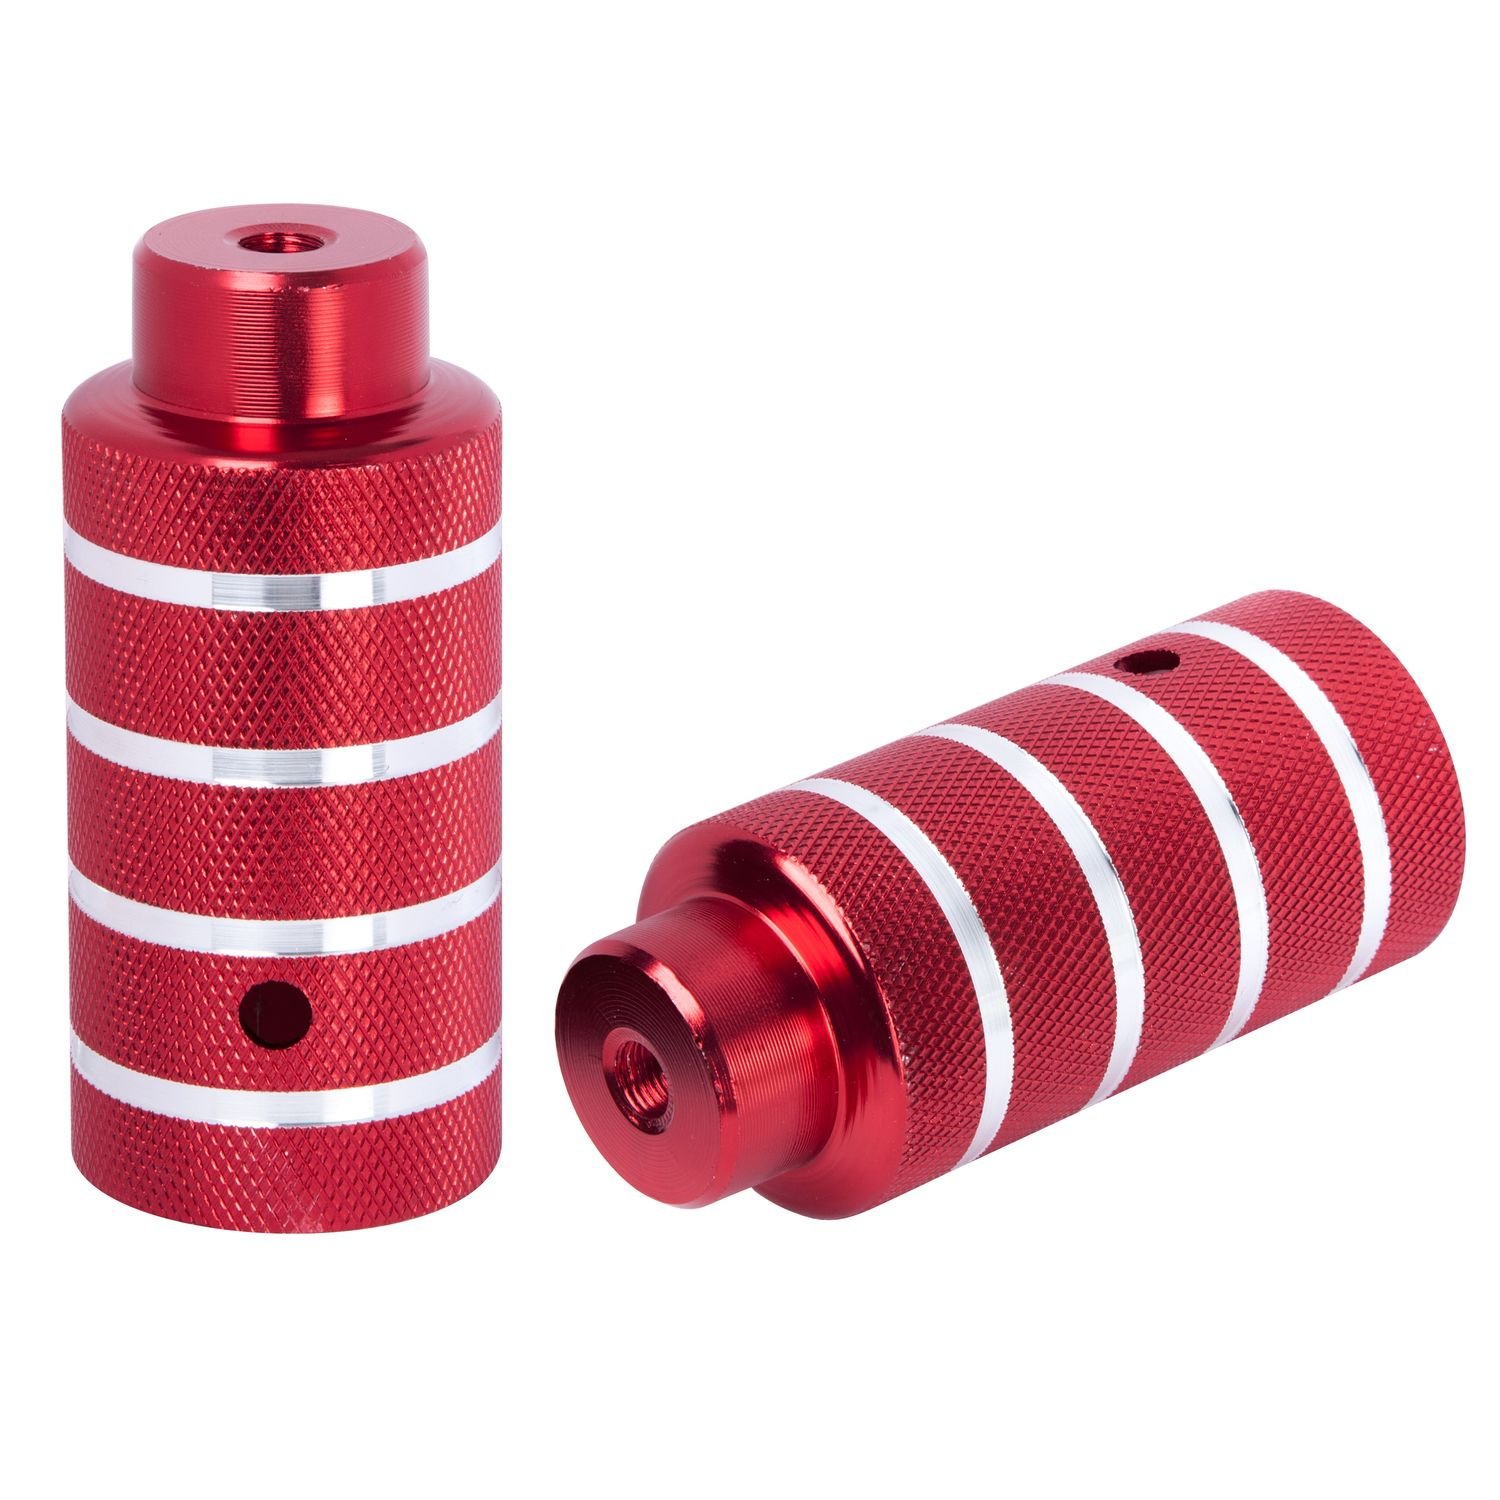 Пеги велосипедные STG, алюминий, 50×110 мм, 3/8×26T, красный, Х82578